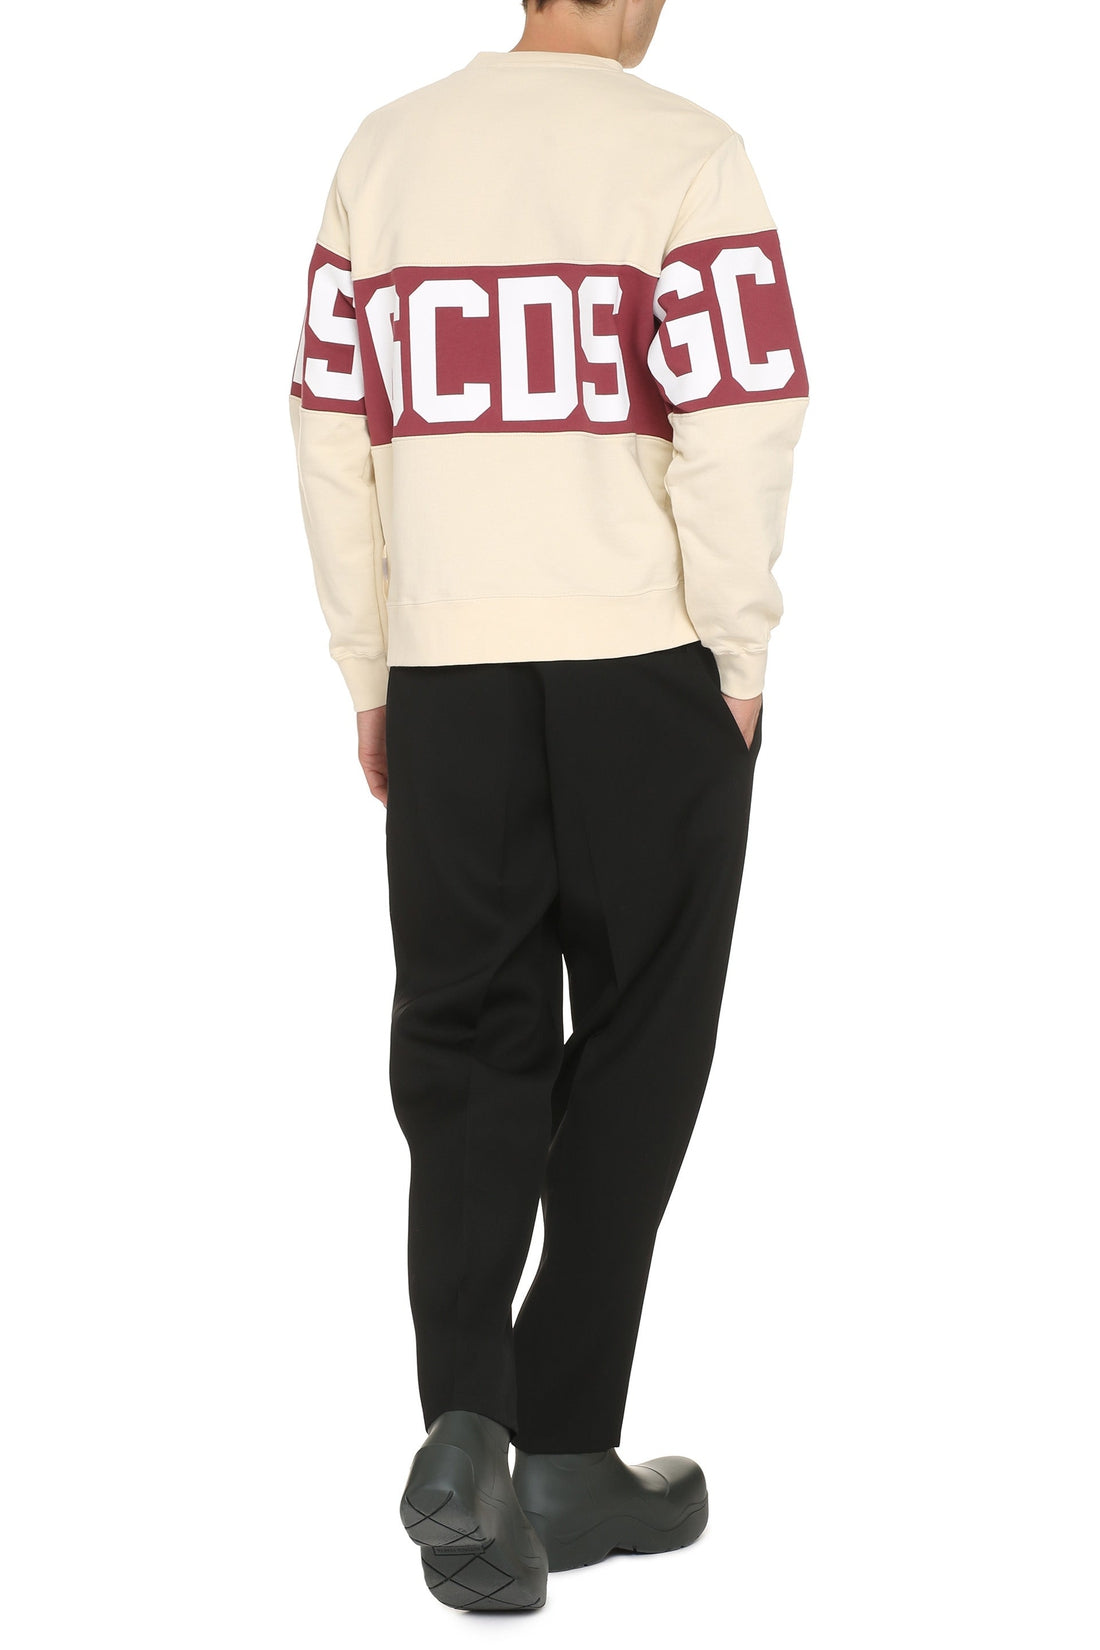 GCDS-OUTLET-SALE-Logo detail cotton sweatshirt-ARCHIVIST